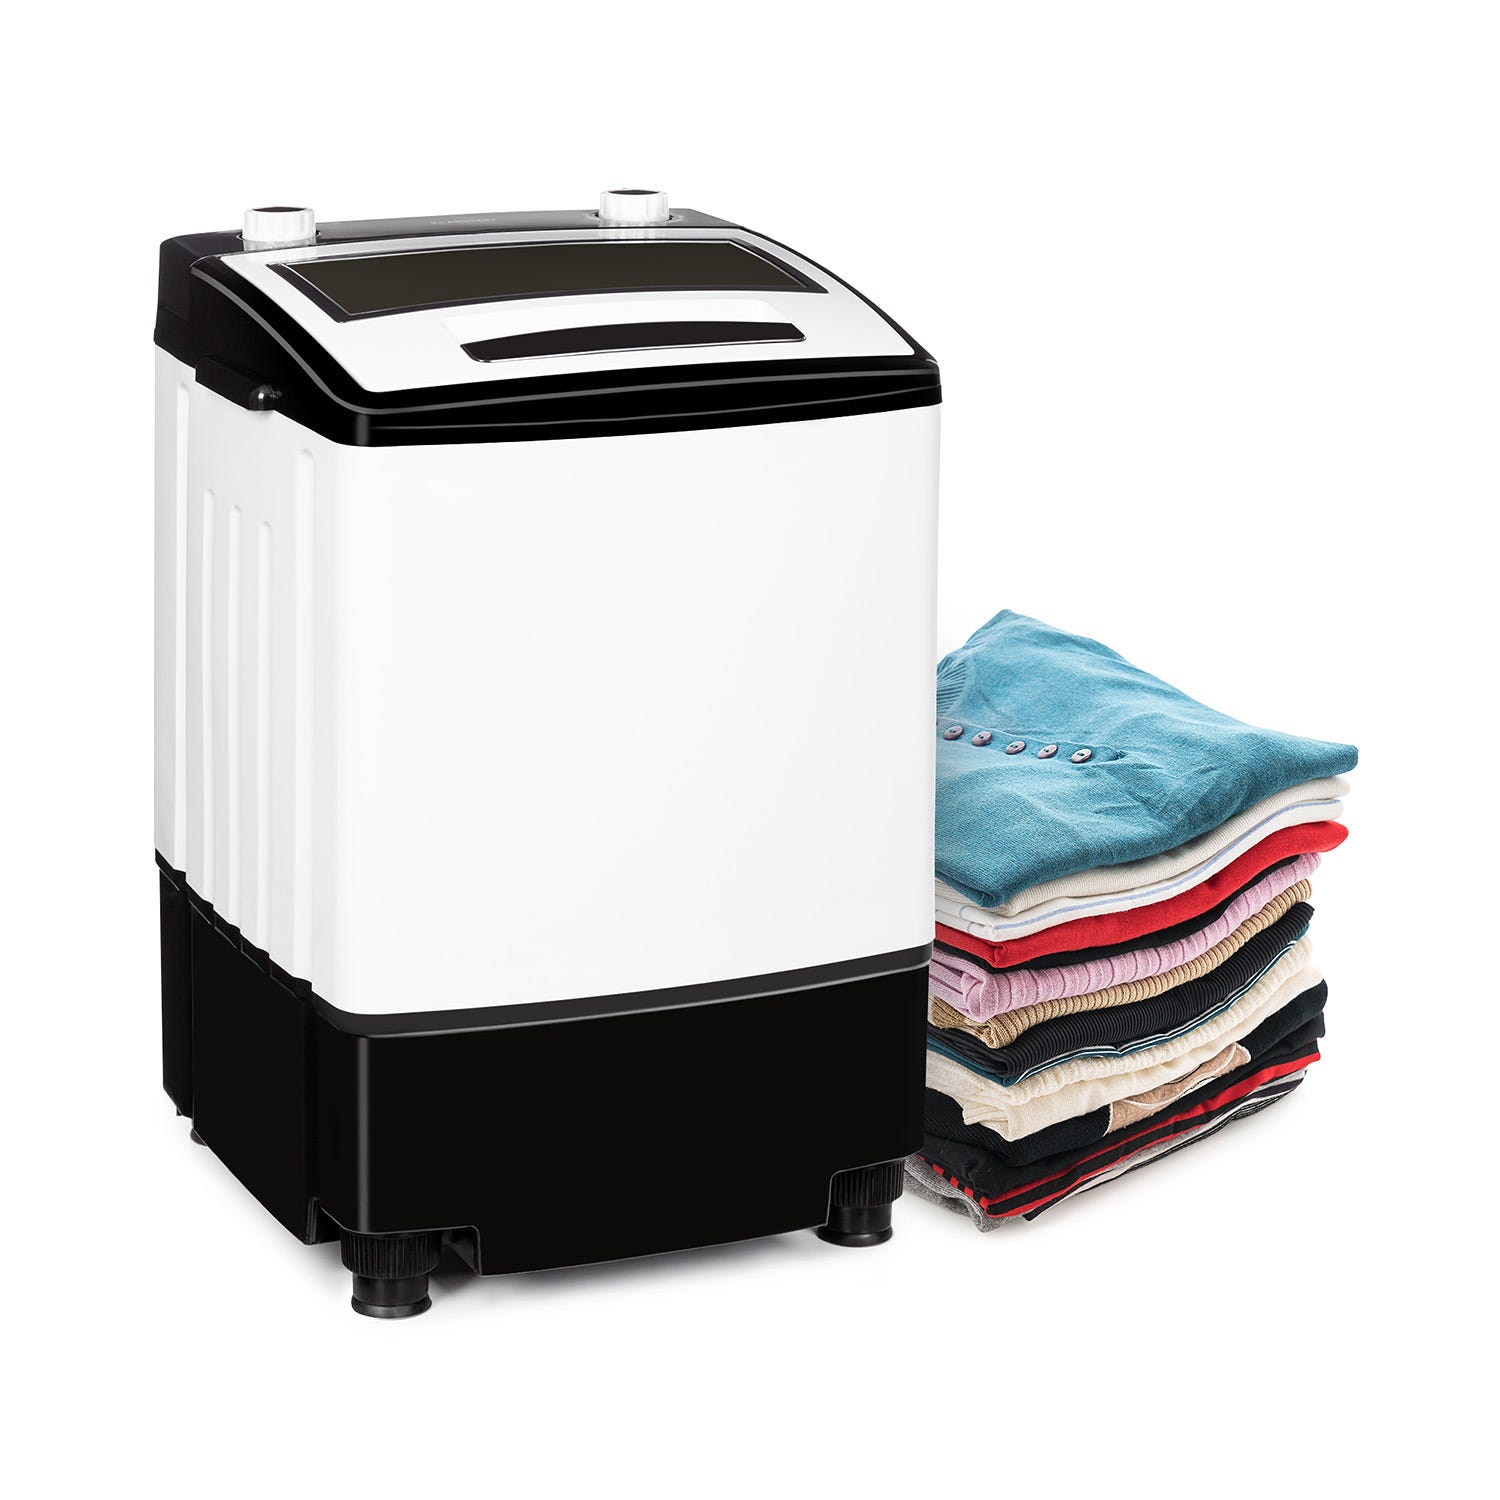 Mini machine à laver Oneconcept Ecowash-Pico avec essorage 3,5 kg